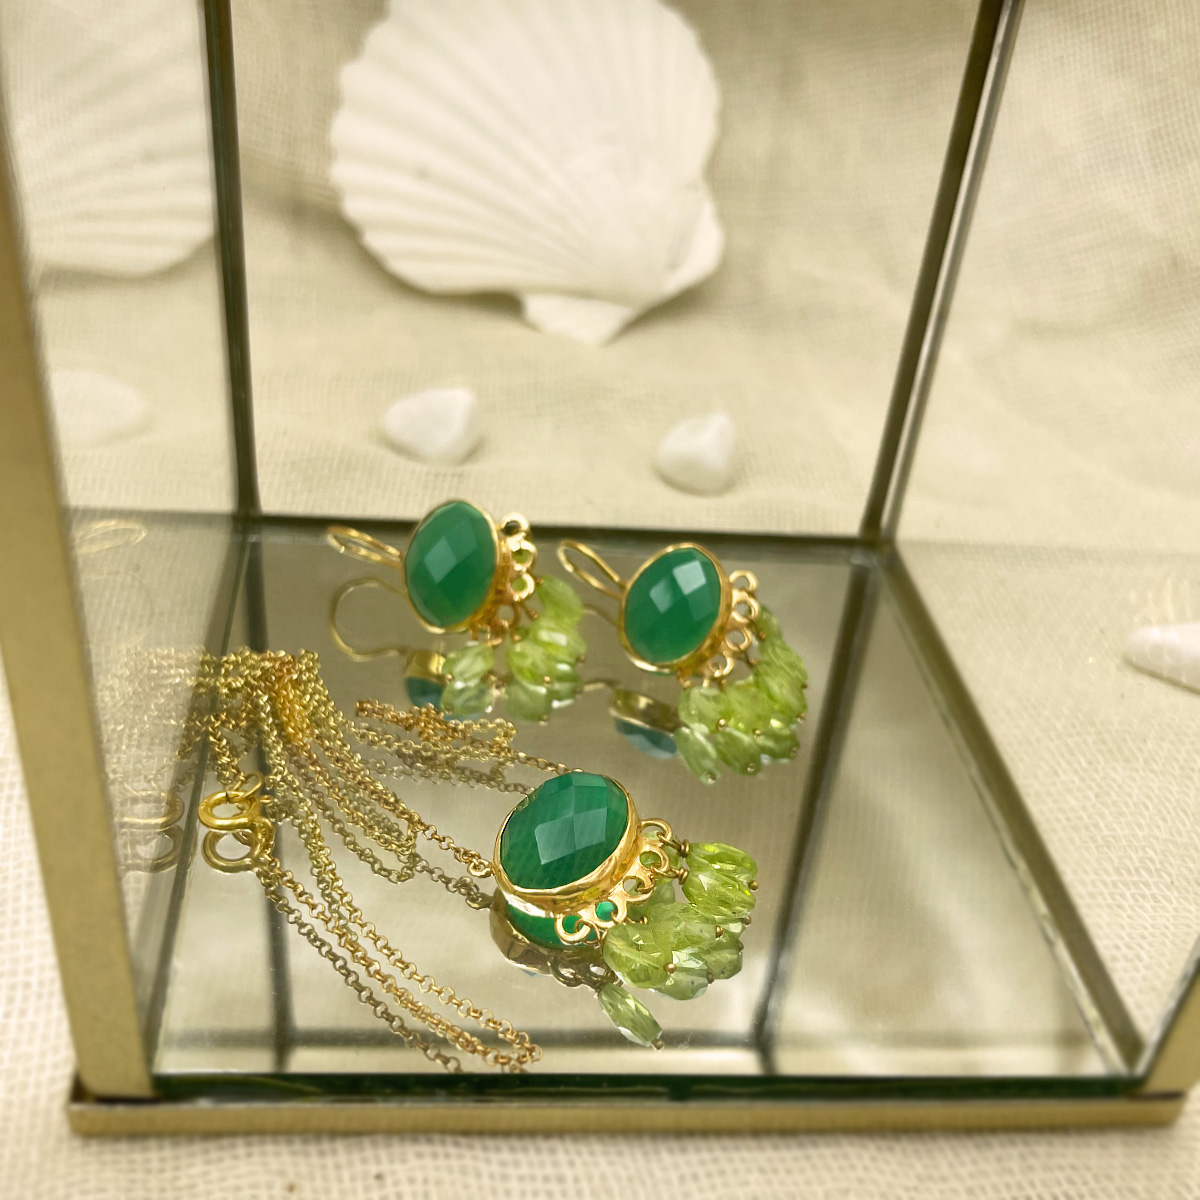 Green agate pendant w peridots Κολιέ με πράσινο αχάτη & πέριδοτ επίχρυσο ασήμι τόνια μακρή gold plated silver tonia makri